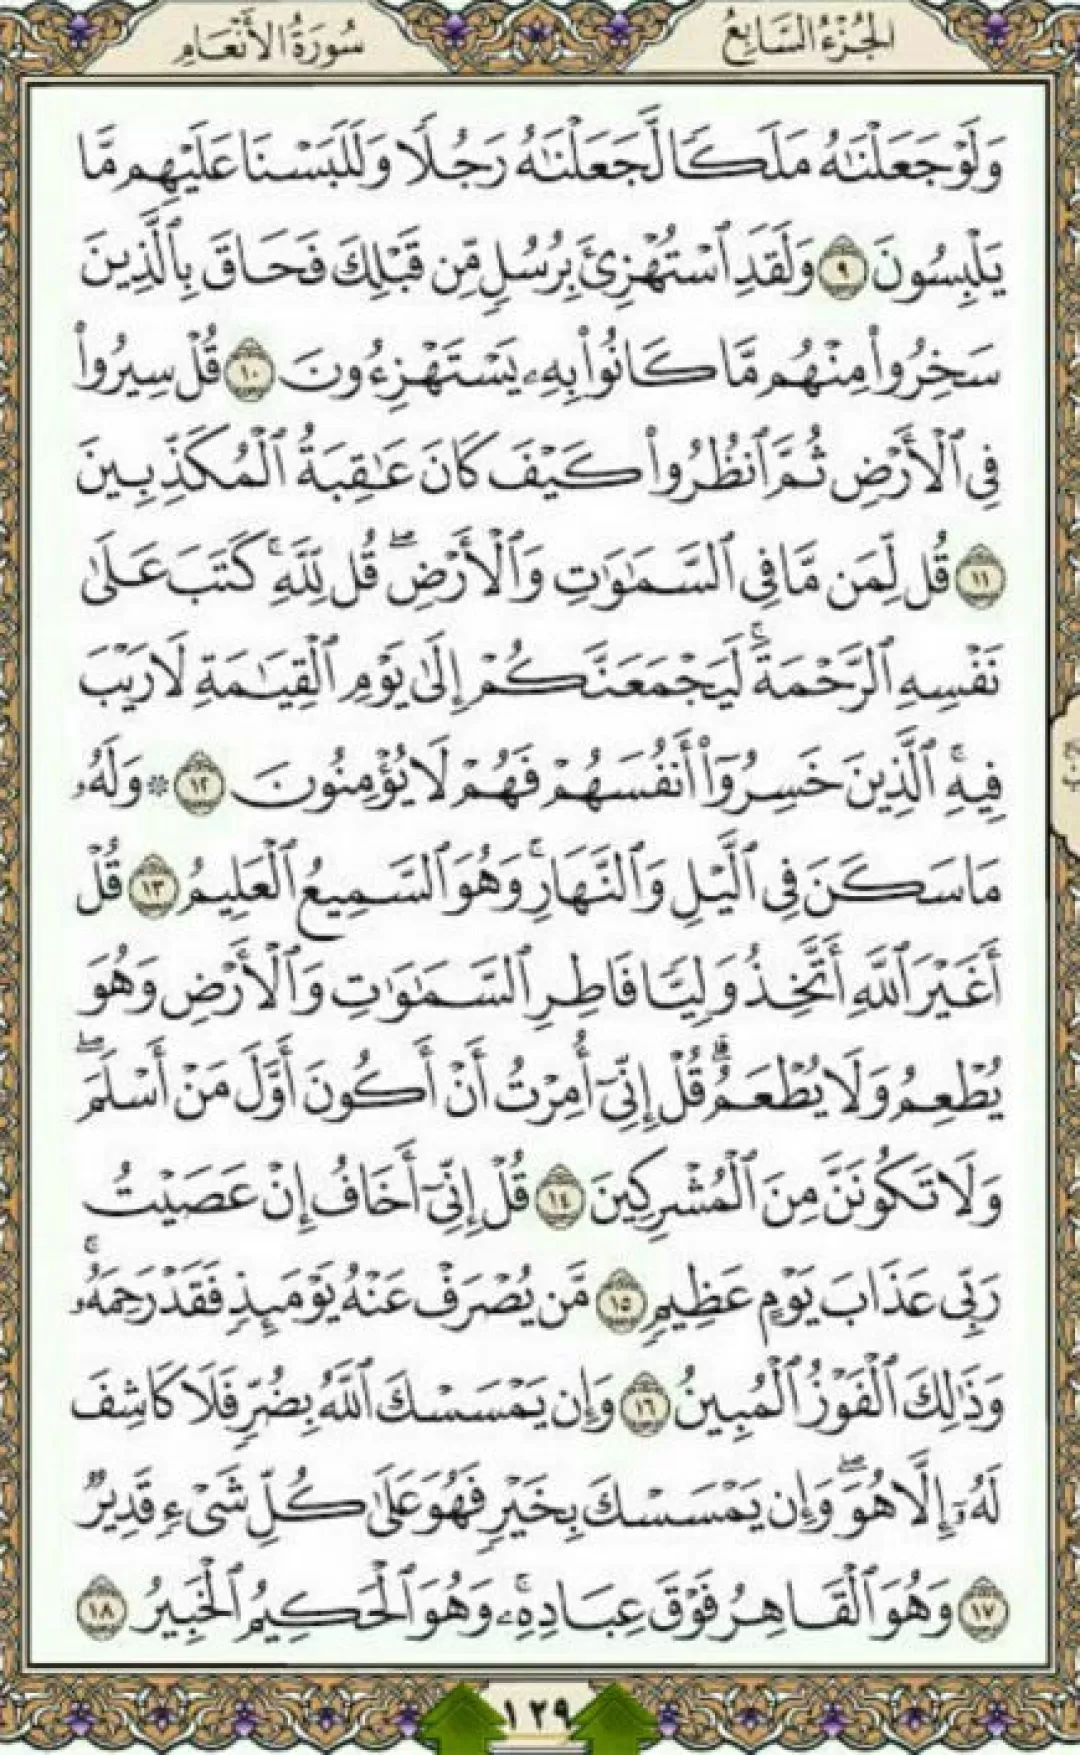 یک صفحه با آیات الهی قرآن مجید